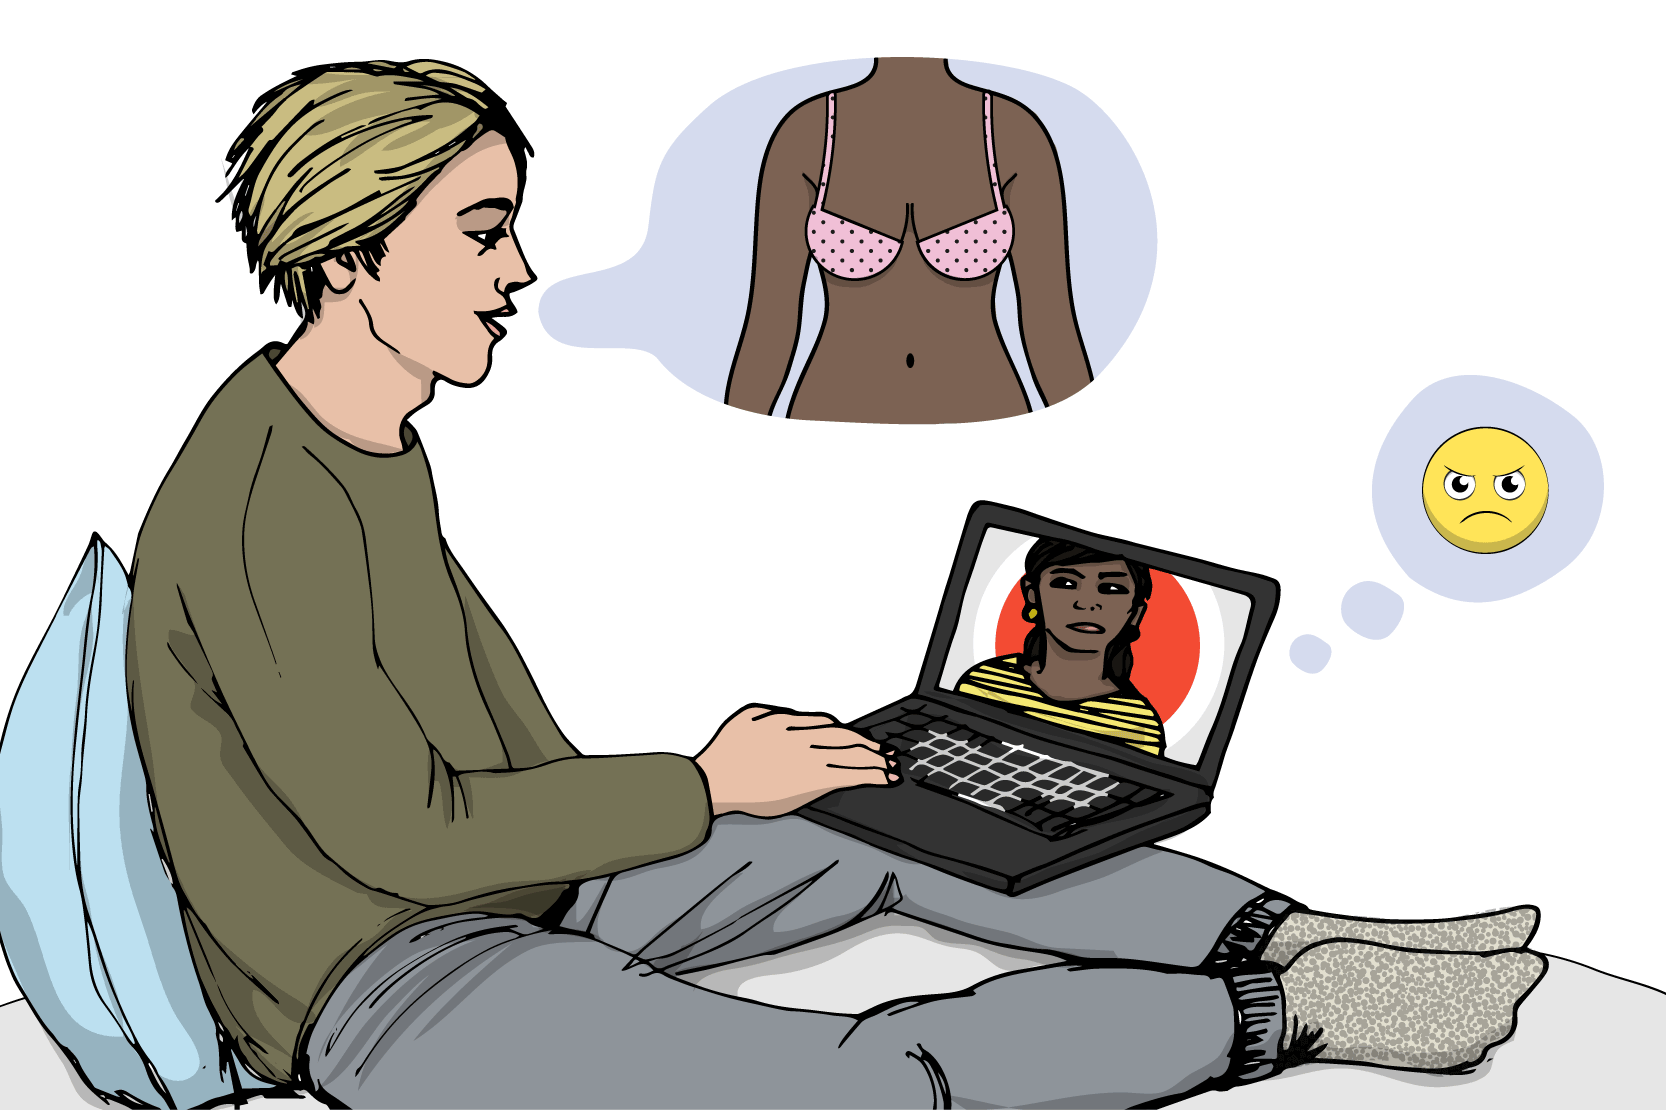 En kille har ett videosamtal med en tjej i datorn.